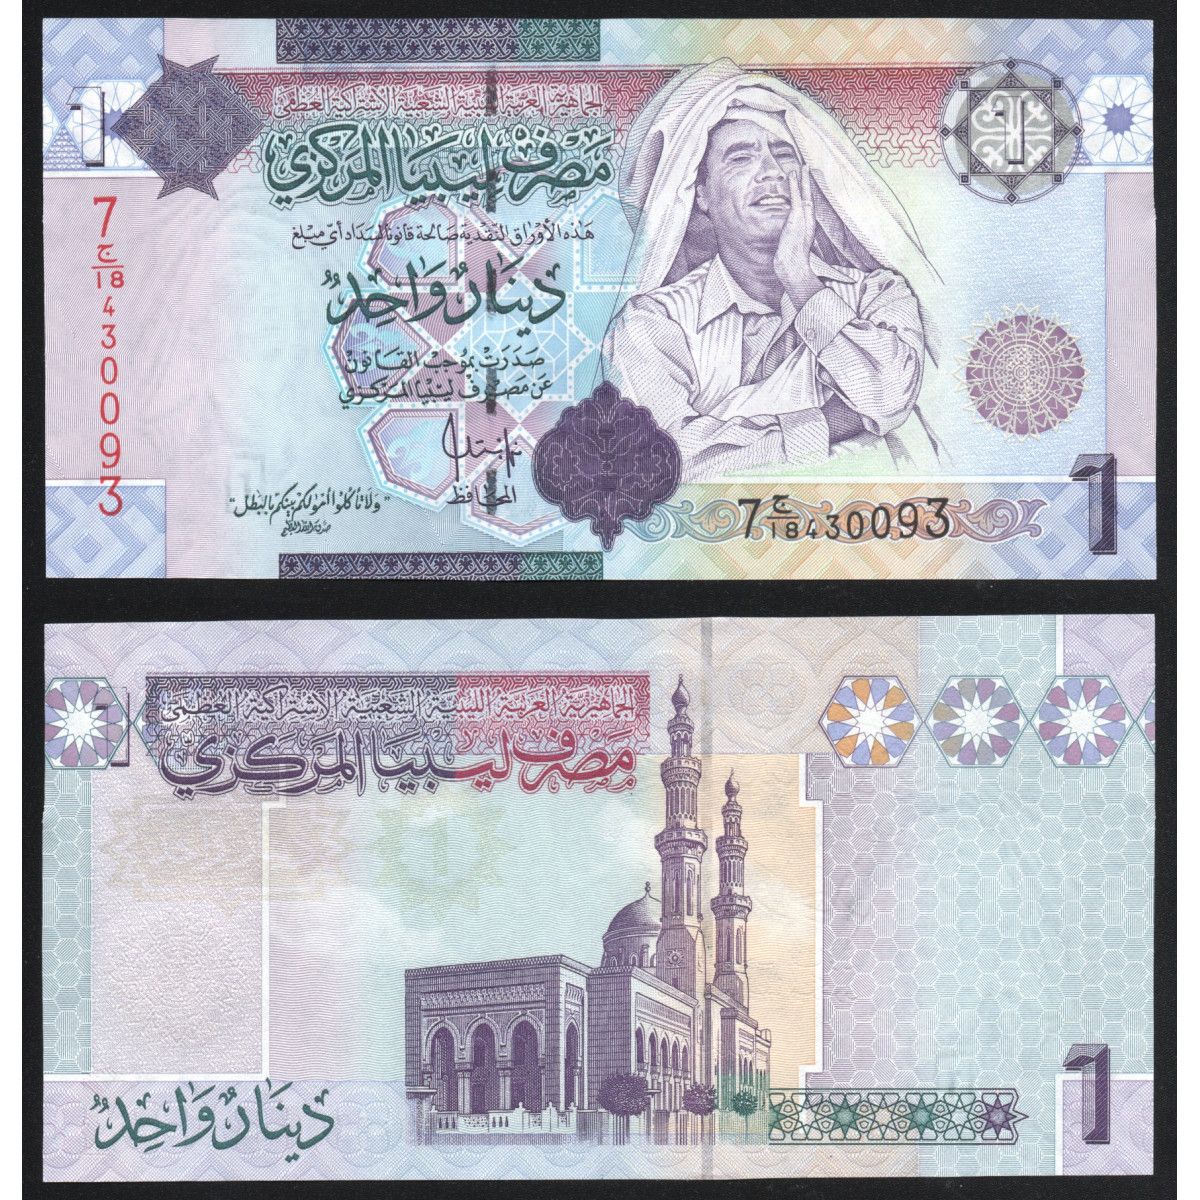 Купюра 2009. Банкноты Ливии с Каддафи. Банкноты Ливия 1 1943.